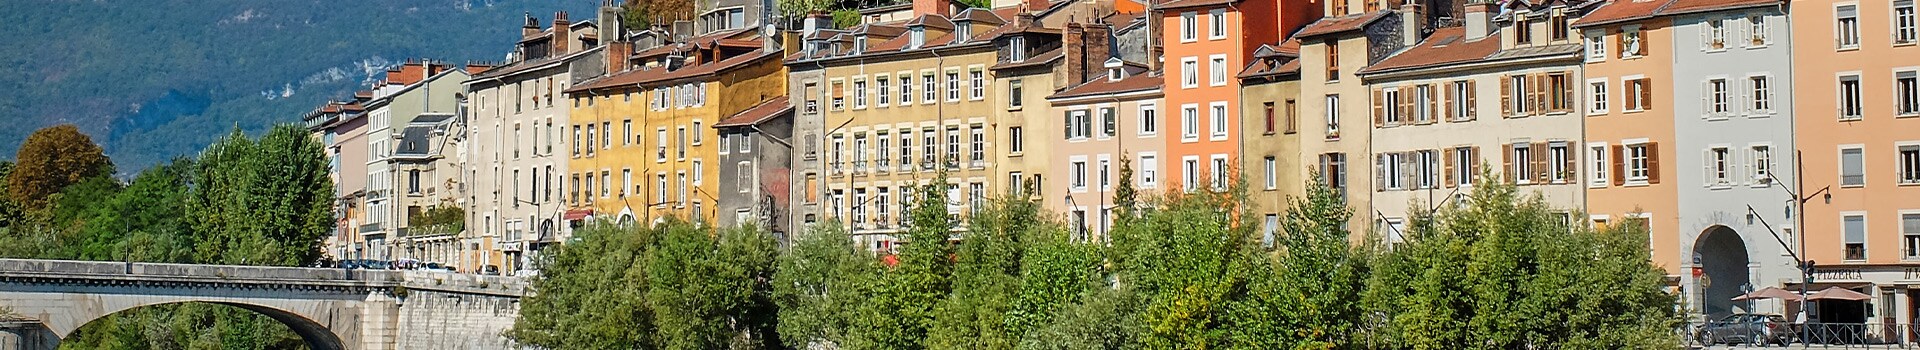 Lisboa - Grenoble